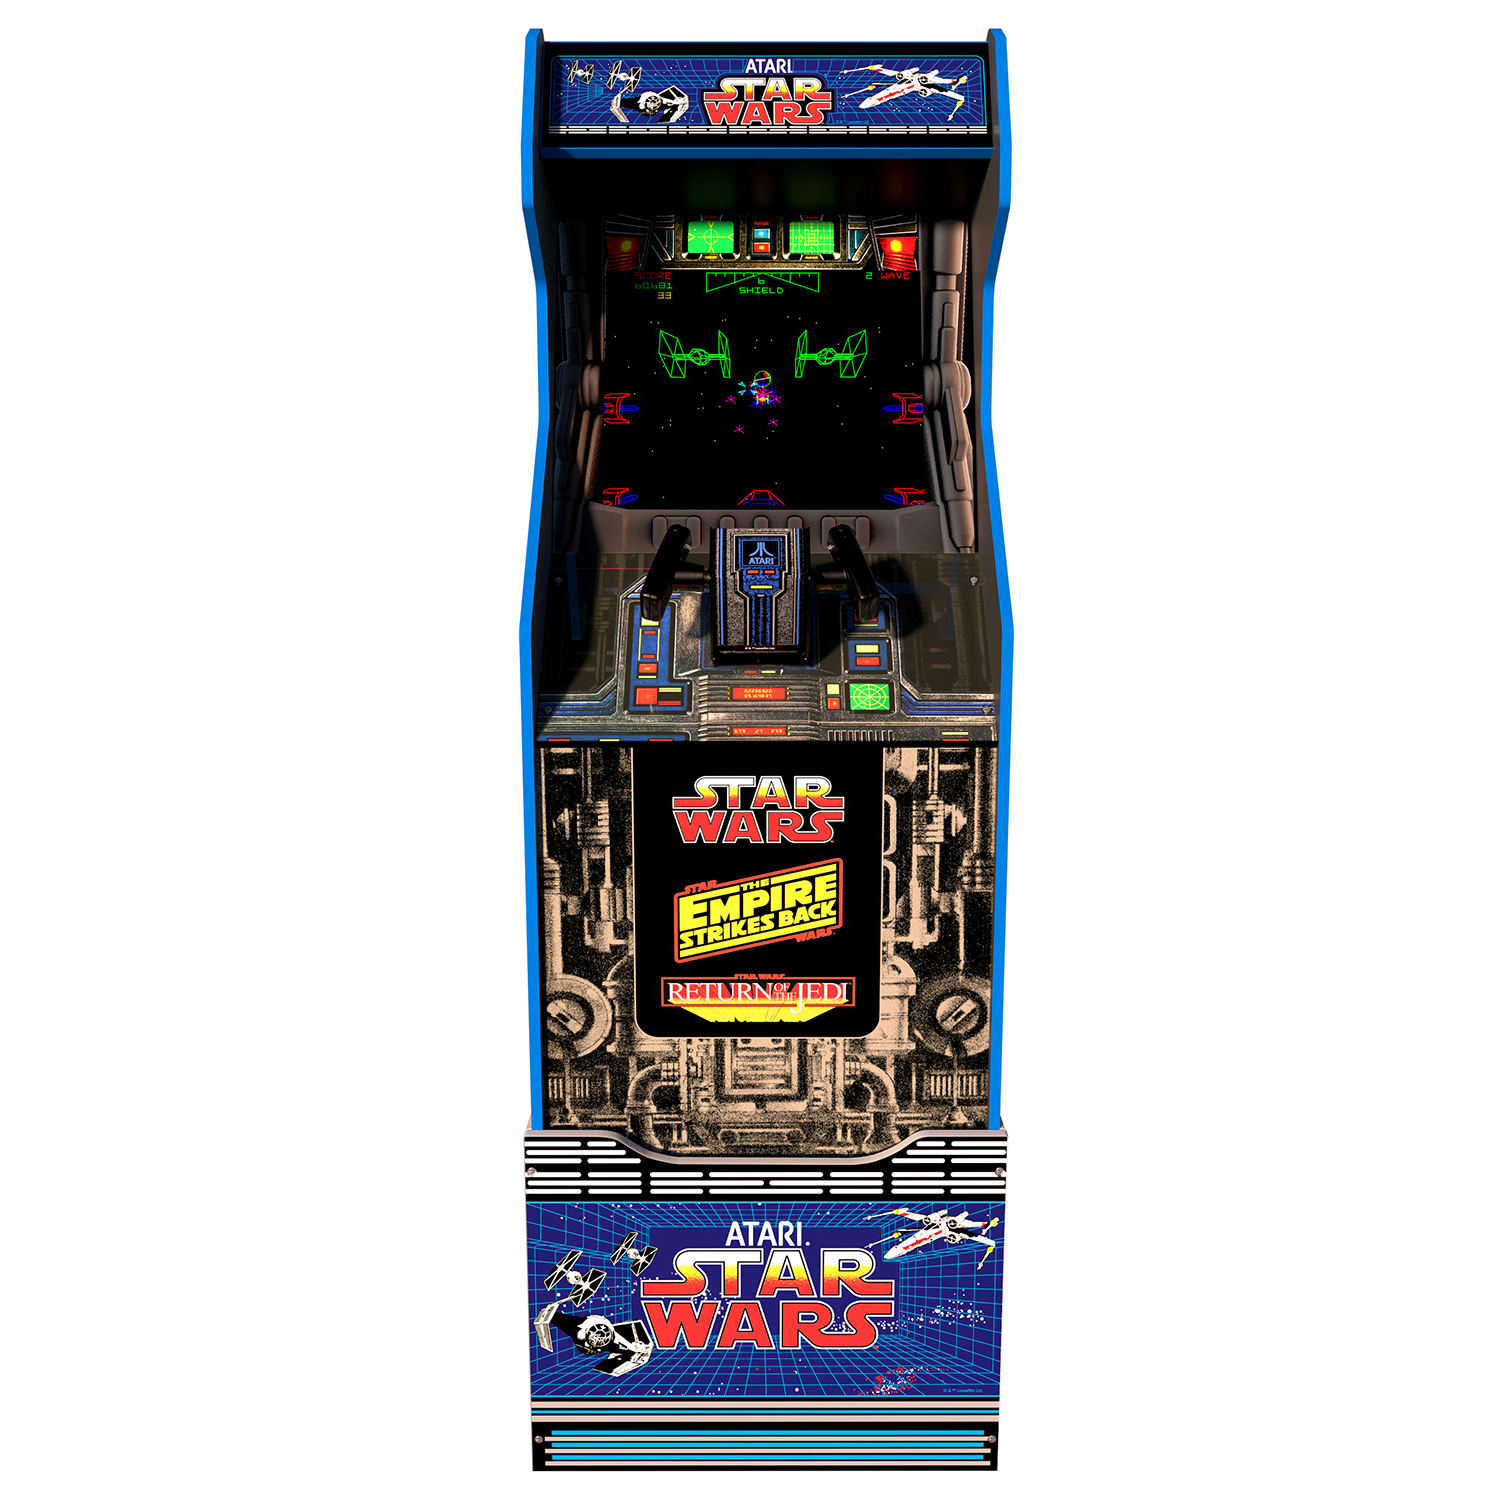 Star Wars Arcade Machine w/ Riser, Arcade1UP - image 3 of 4